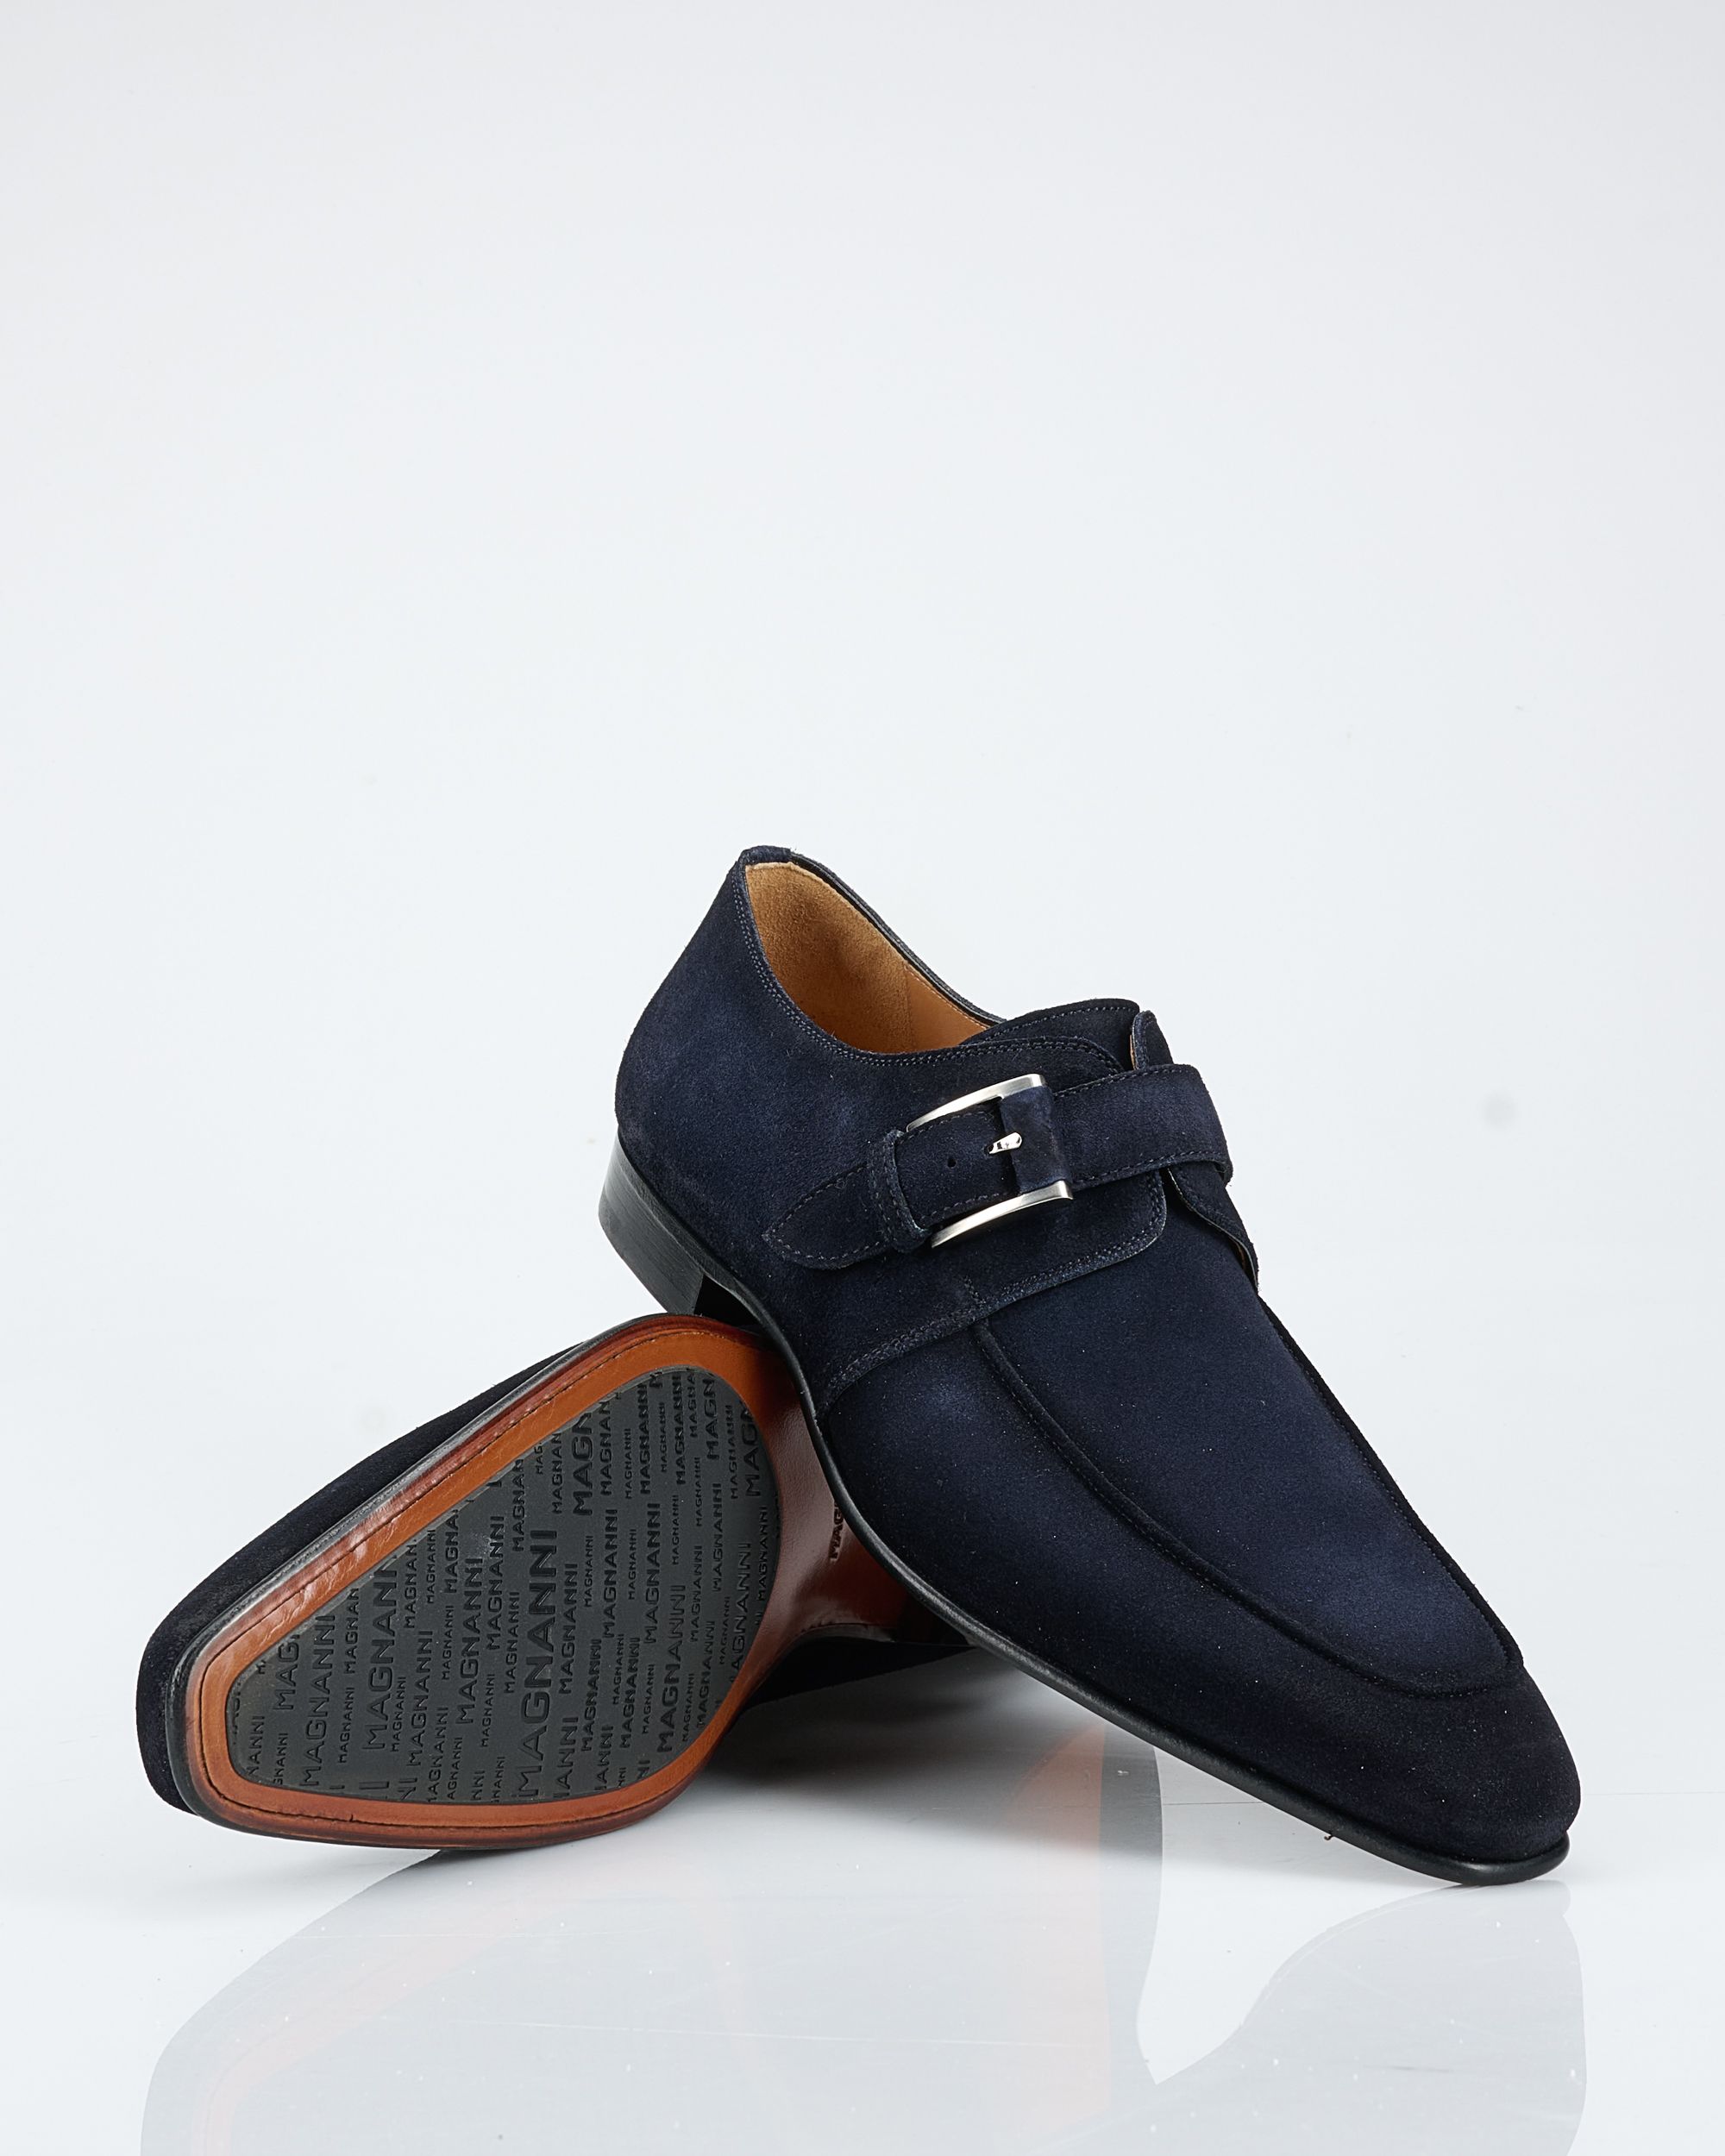 Magnanni Geklede schoenen Blauw 091966-001-46